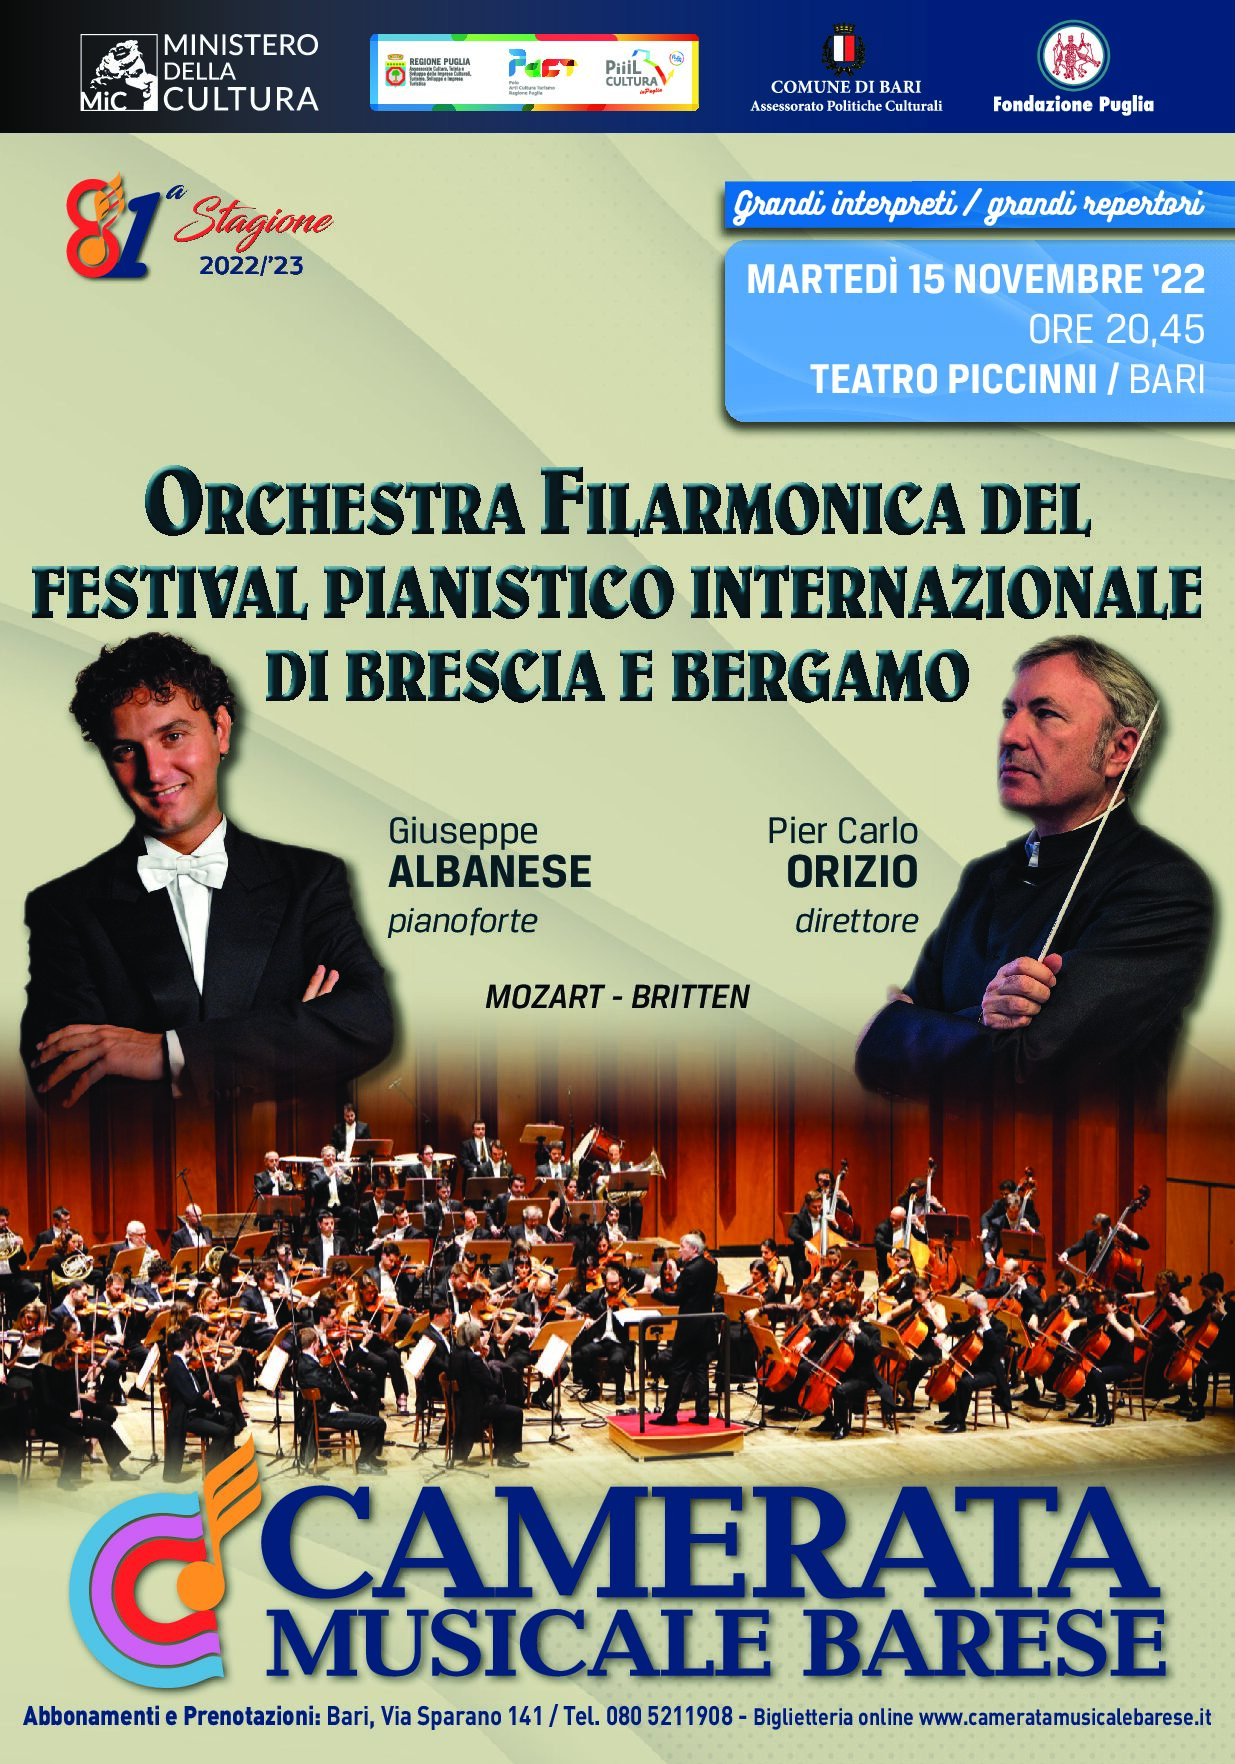 Manifesto ORCHESTRA FILARMONICA DEL FESTIVAL PIANISTICO INTERNAZIONALE DI BRESCIA E BERGAMO - Direttore PIER CARLO ORIZIO - Pianista GIUSEPPE